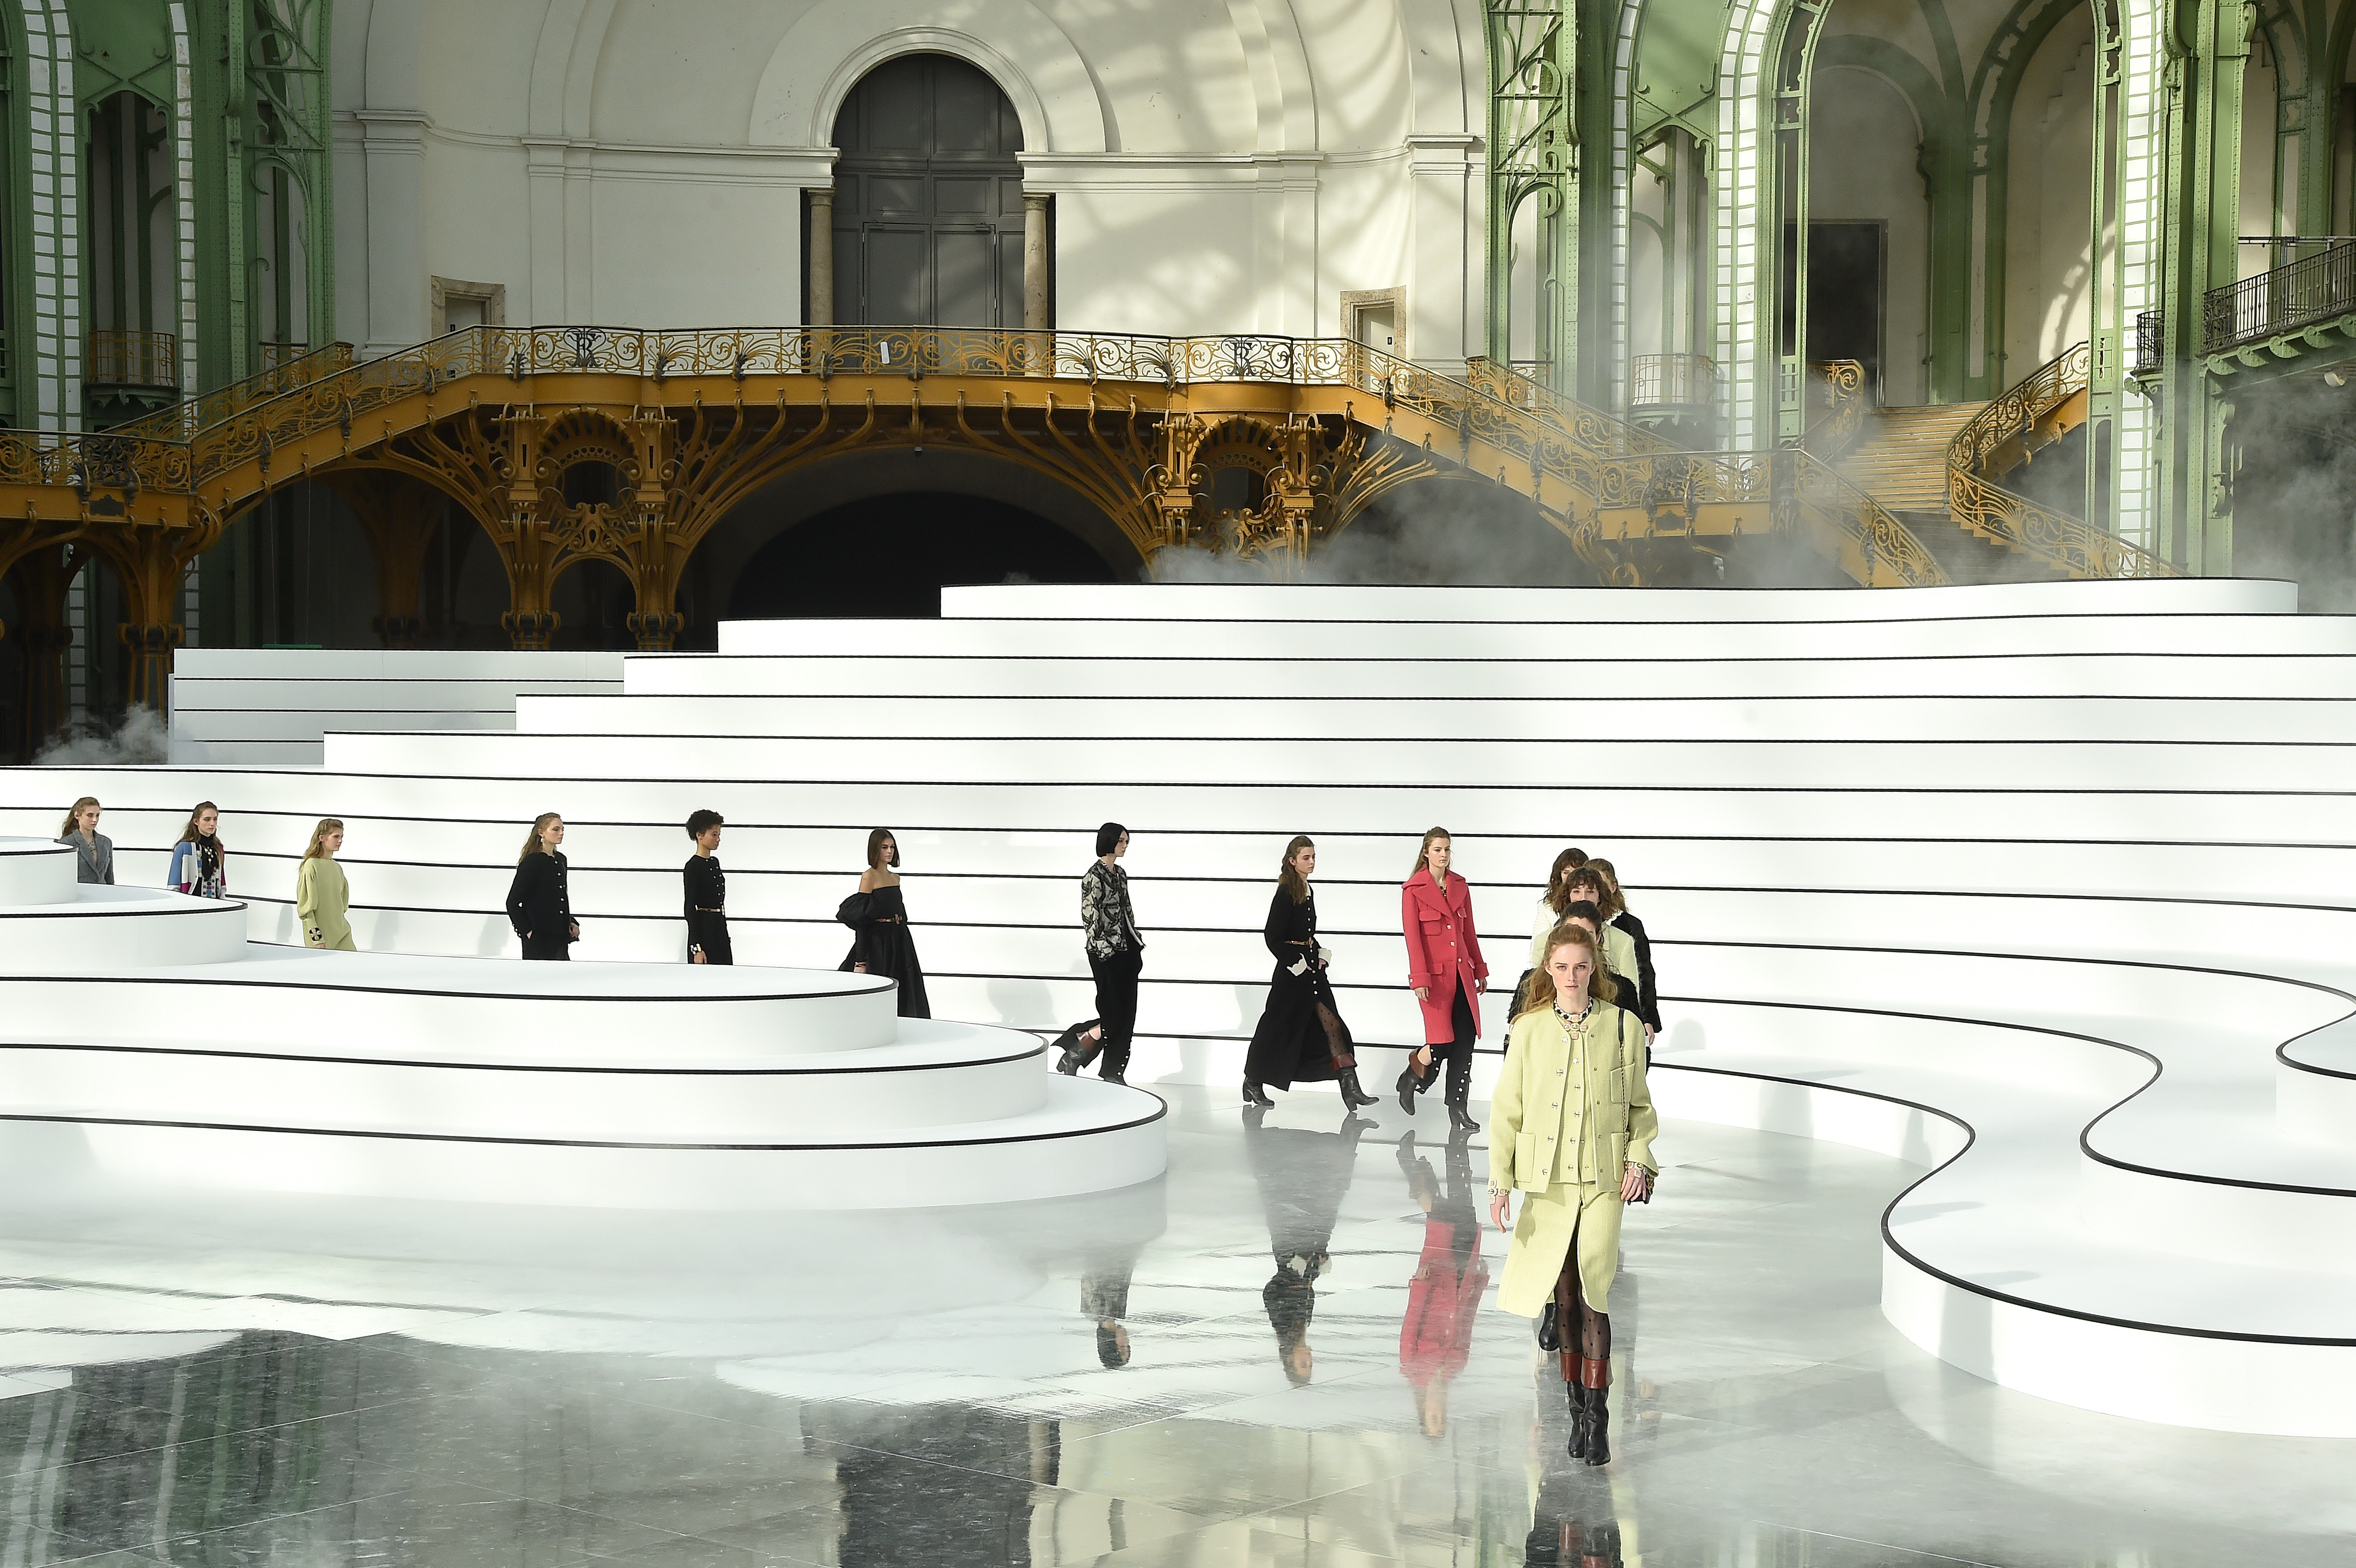 Chanel Unveils Renovated 18 Place Vendôme In Paris